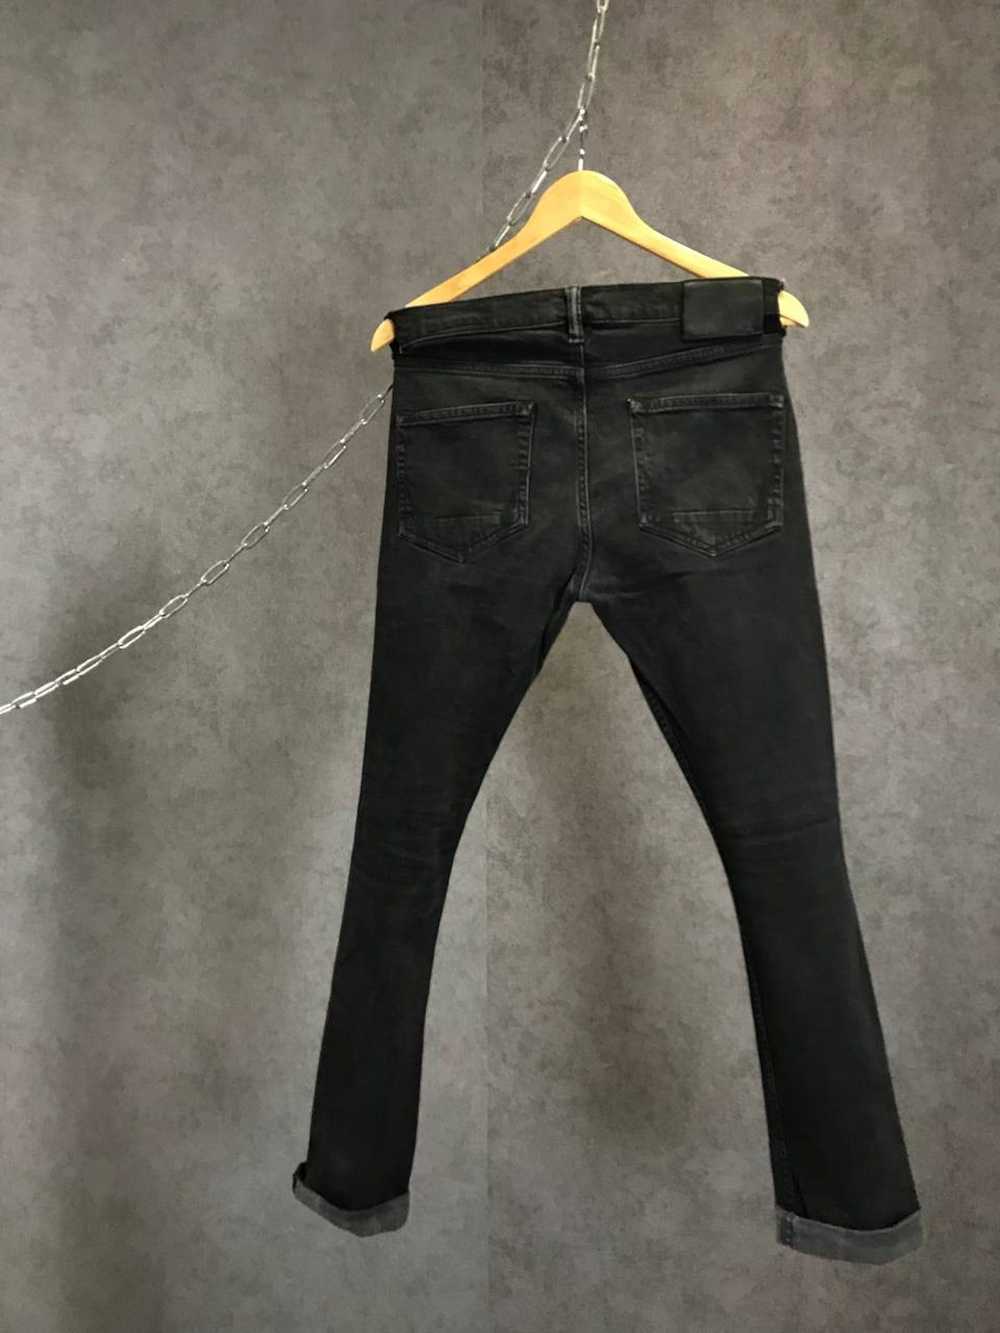 Allsaints Allsaints razor jeans - image 5